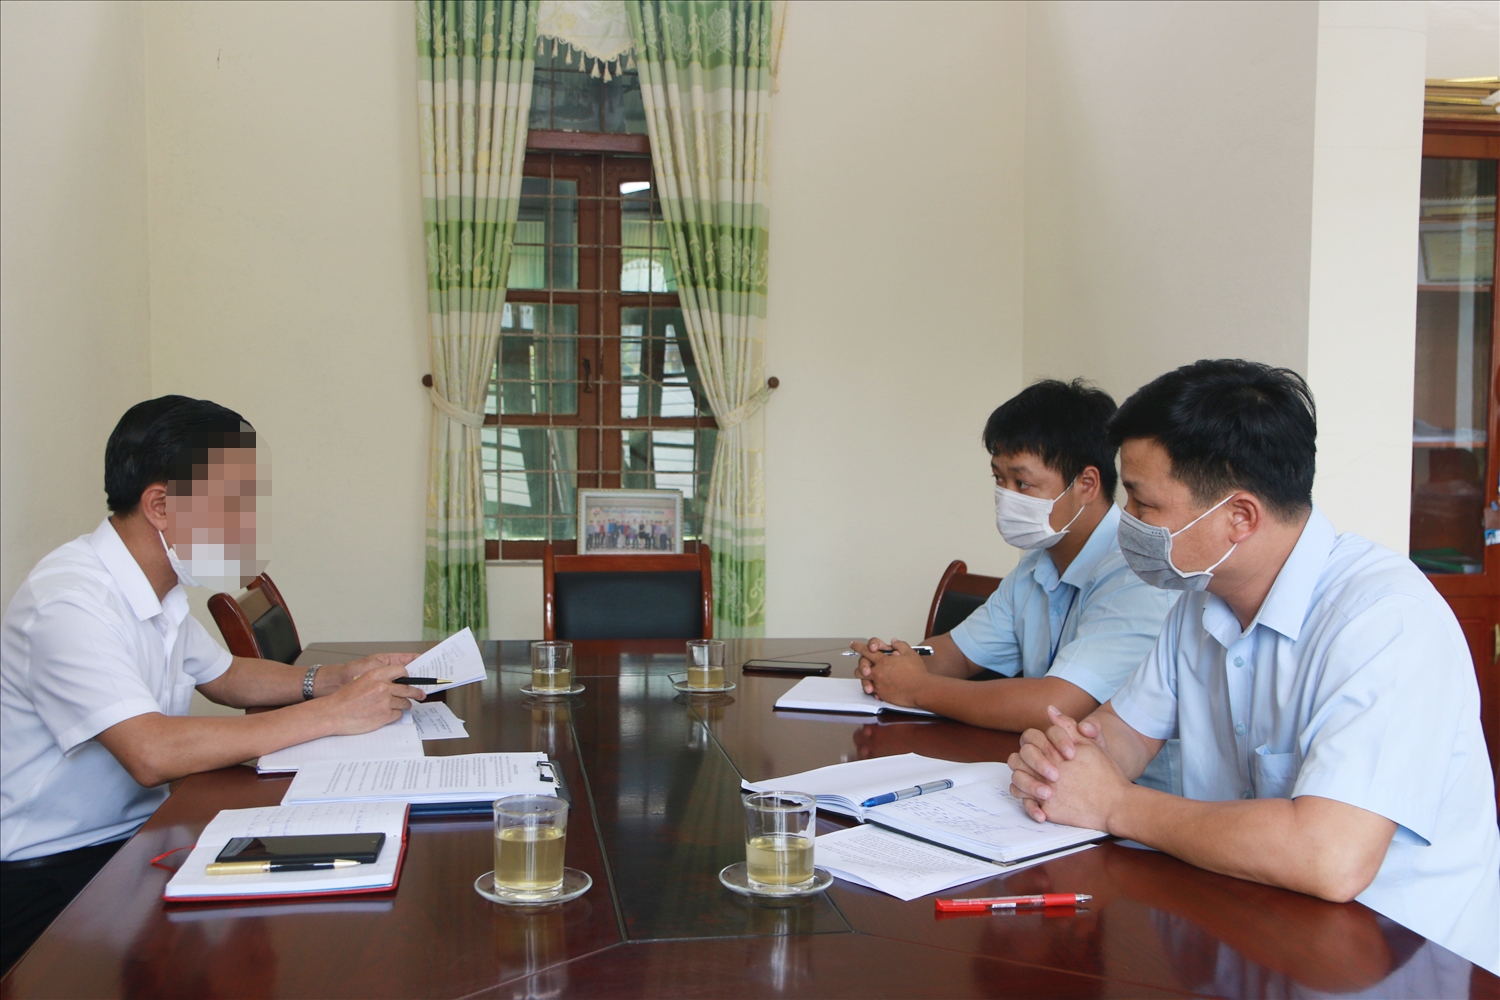 PV Báo Dân tộc và Phát triển trao đổi với ông Nguyễn Thế Nam, Bí thư, Chủ tịch xã Tiên Lãng (ngoài cùng bên phải) cùng cán bộ địa chính xã vào ngày 3/8/2021